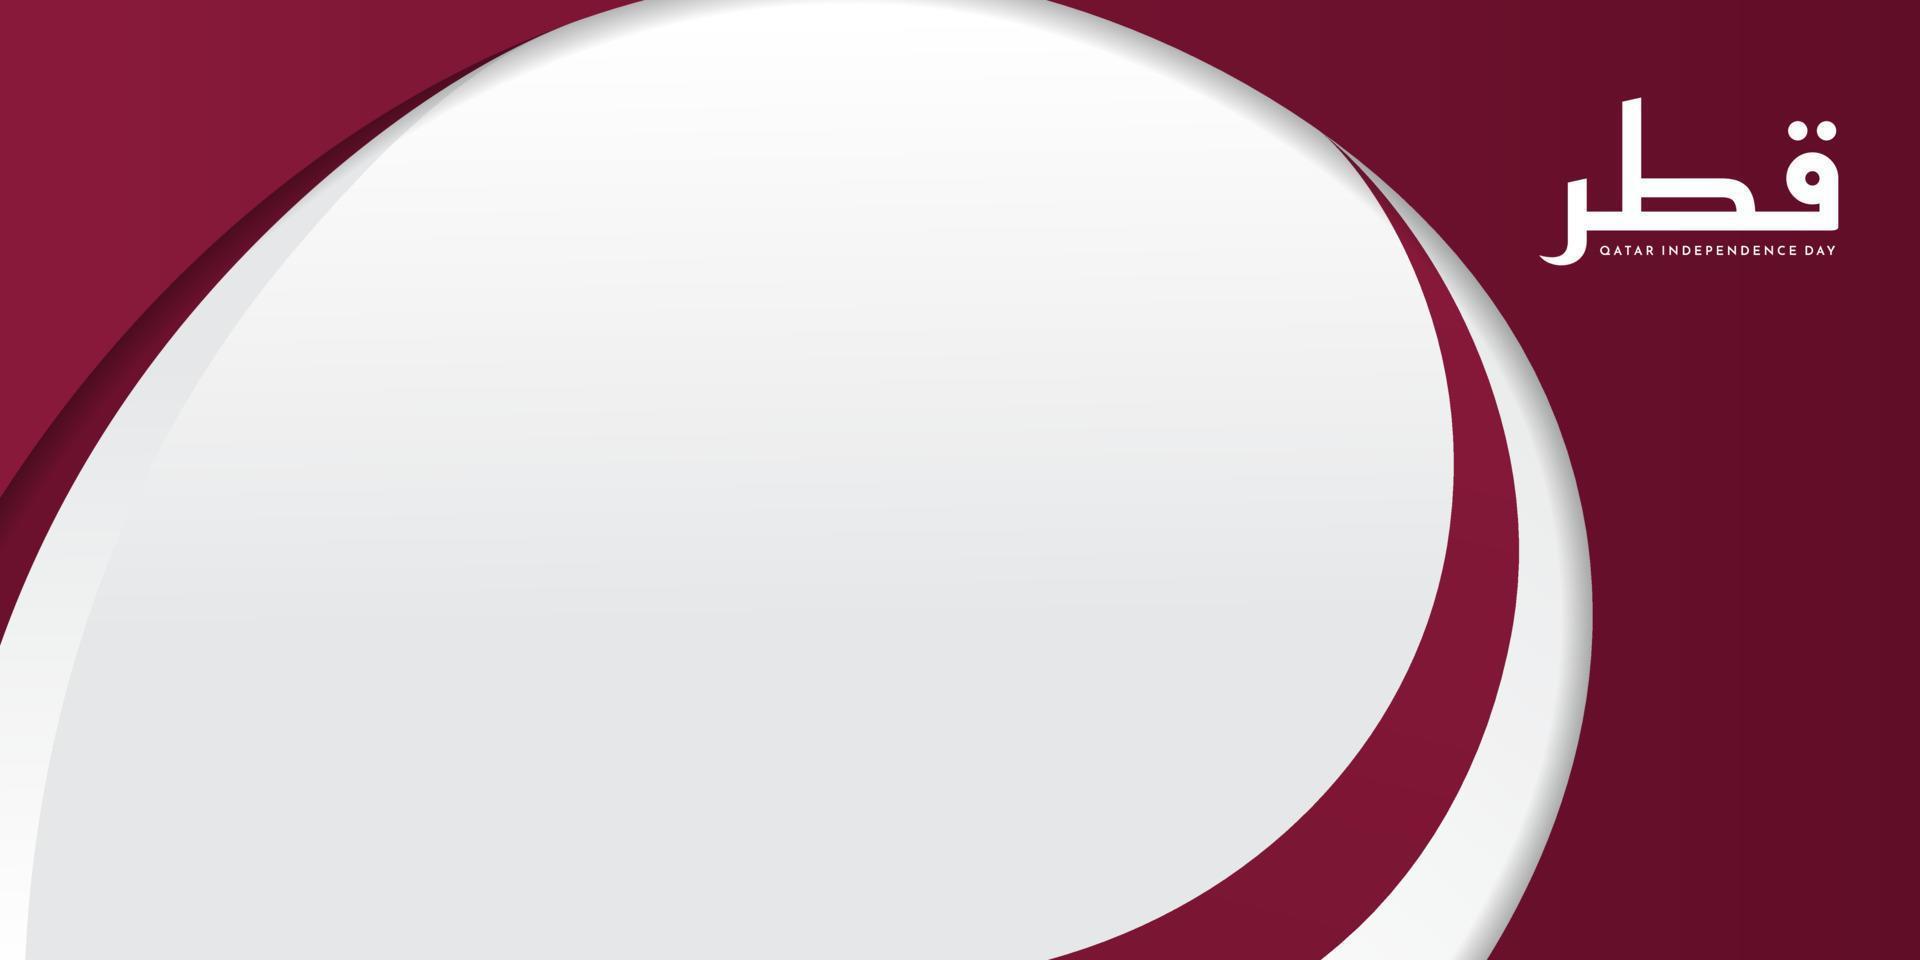 kastanjebruin en wit cirkel abstract ontwerp als achtergrond. qatar onafhankelijkheidsdag sjabloonontwerp. vector